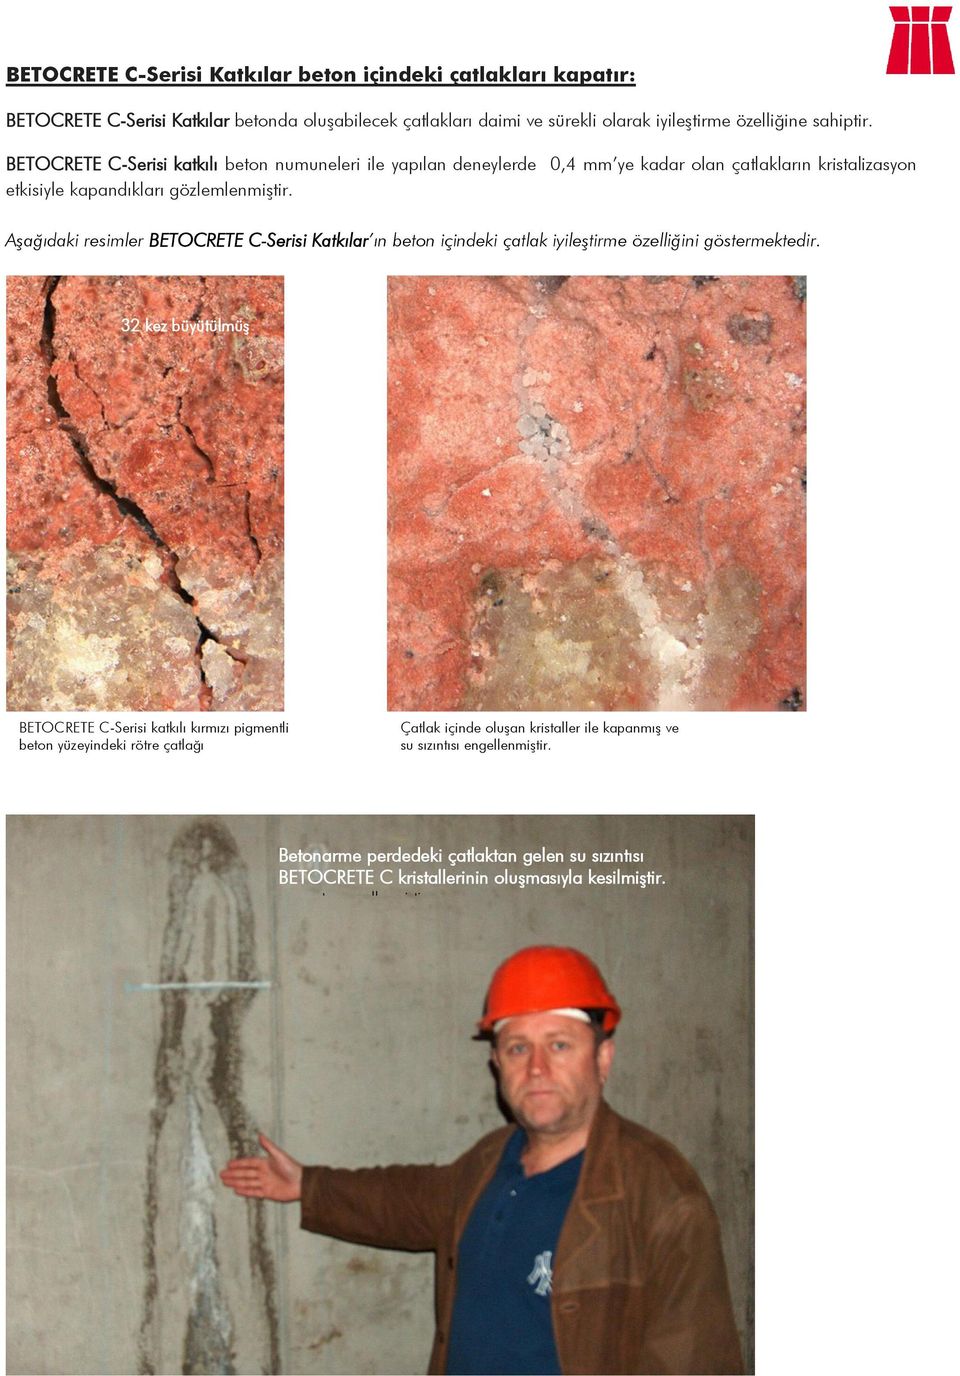 Aşağıdaki resimler BETOCRETE C-Serisi Katkılar ın beton içindeki çatlak iyileştirme özelliğini göstermektedir.